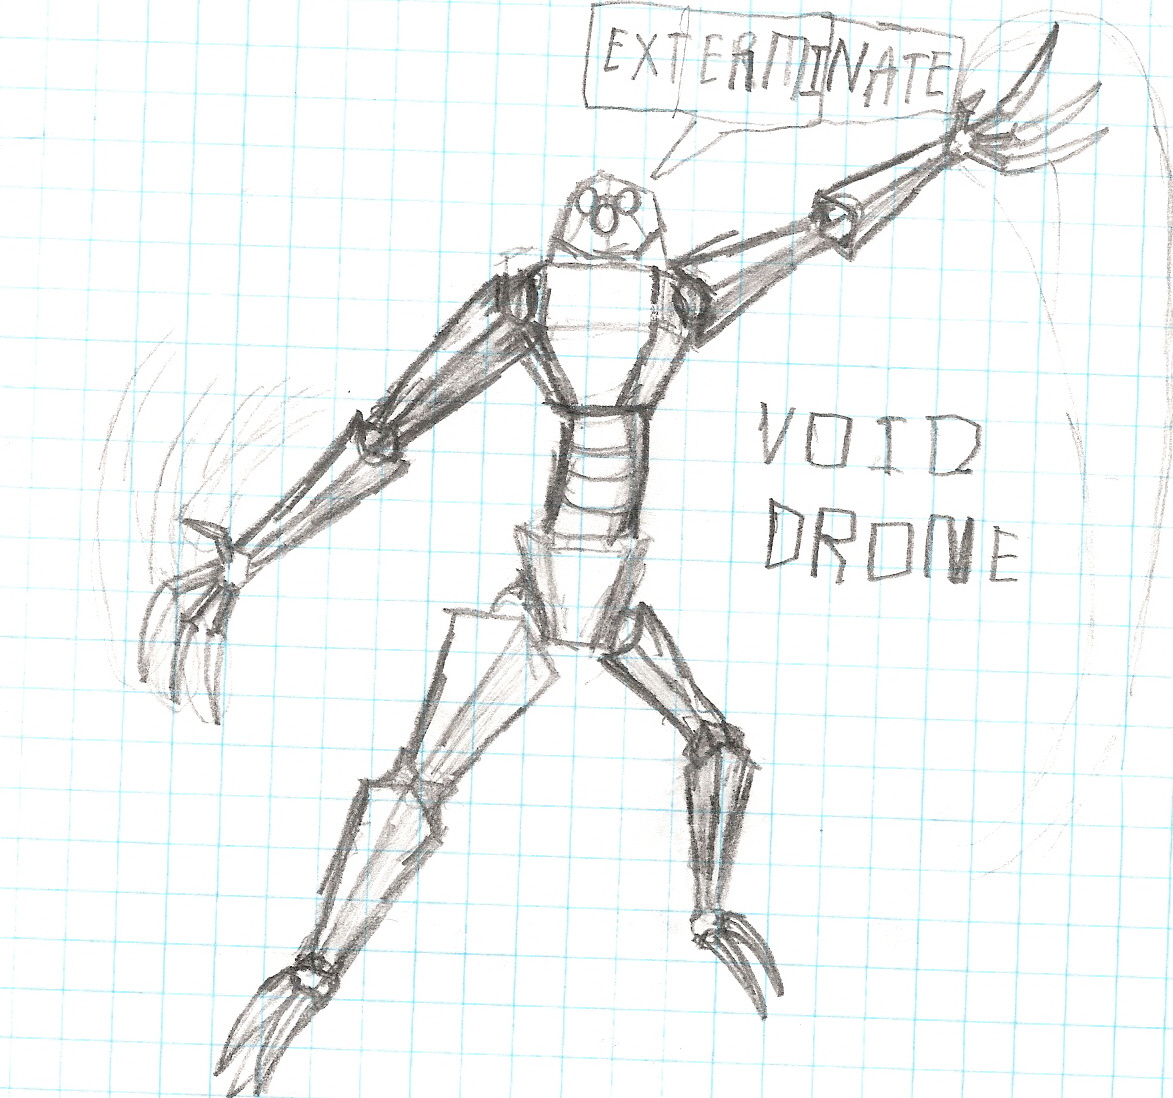 Void drone by darkone10